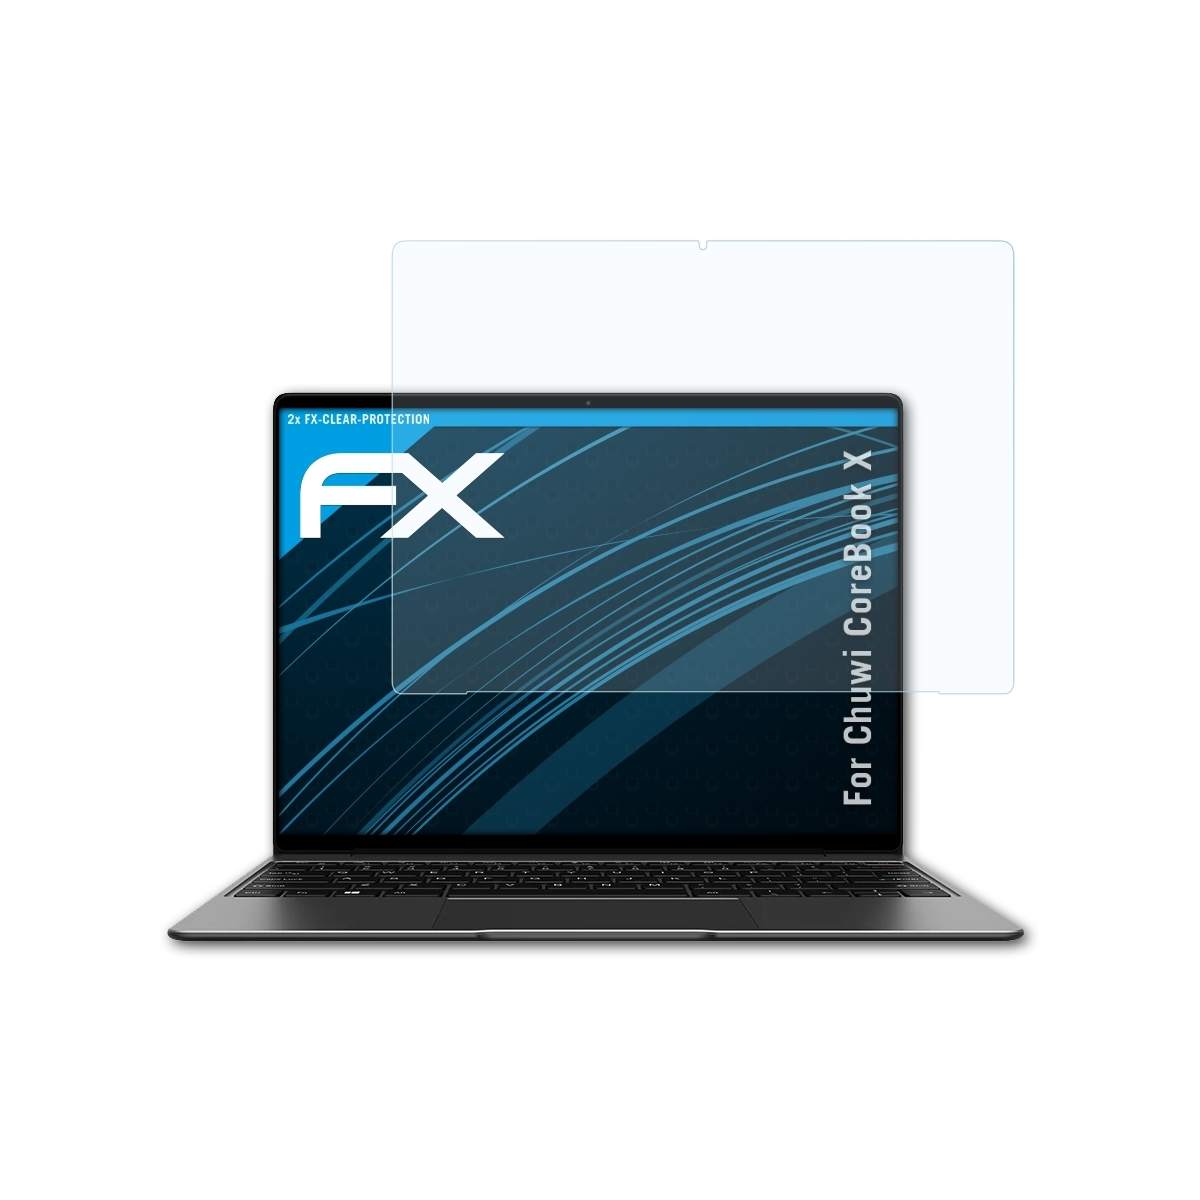 X) ATFOLIX CoreBook Displayschutz(für FX-Clear Chuwi 2x